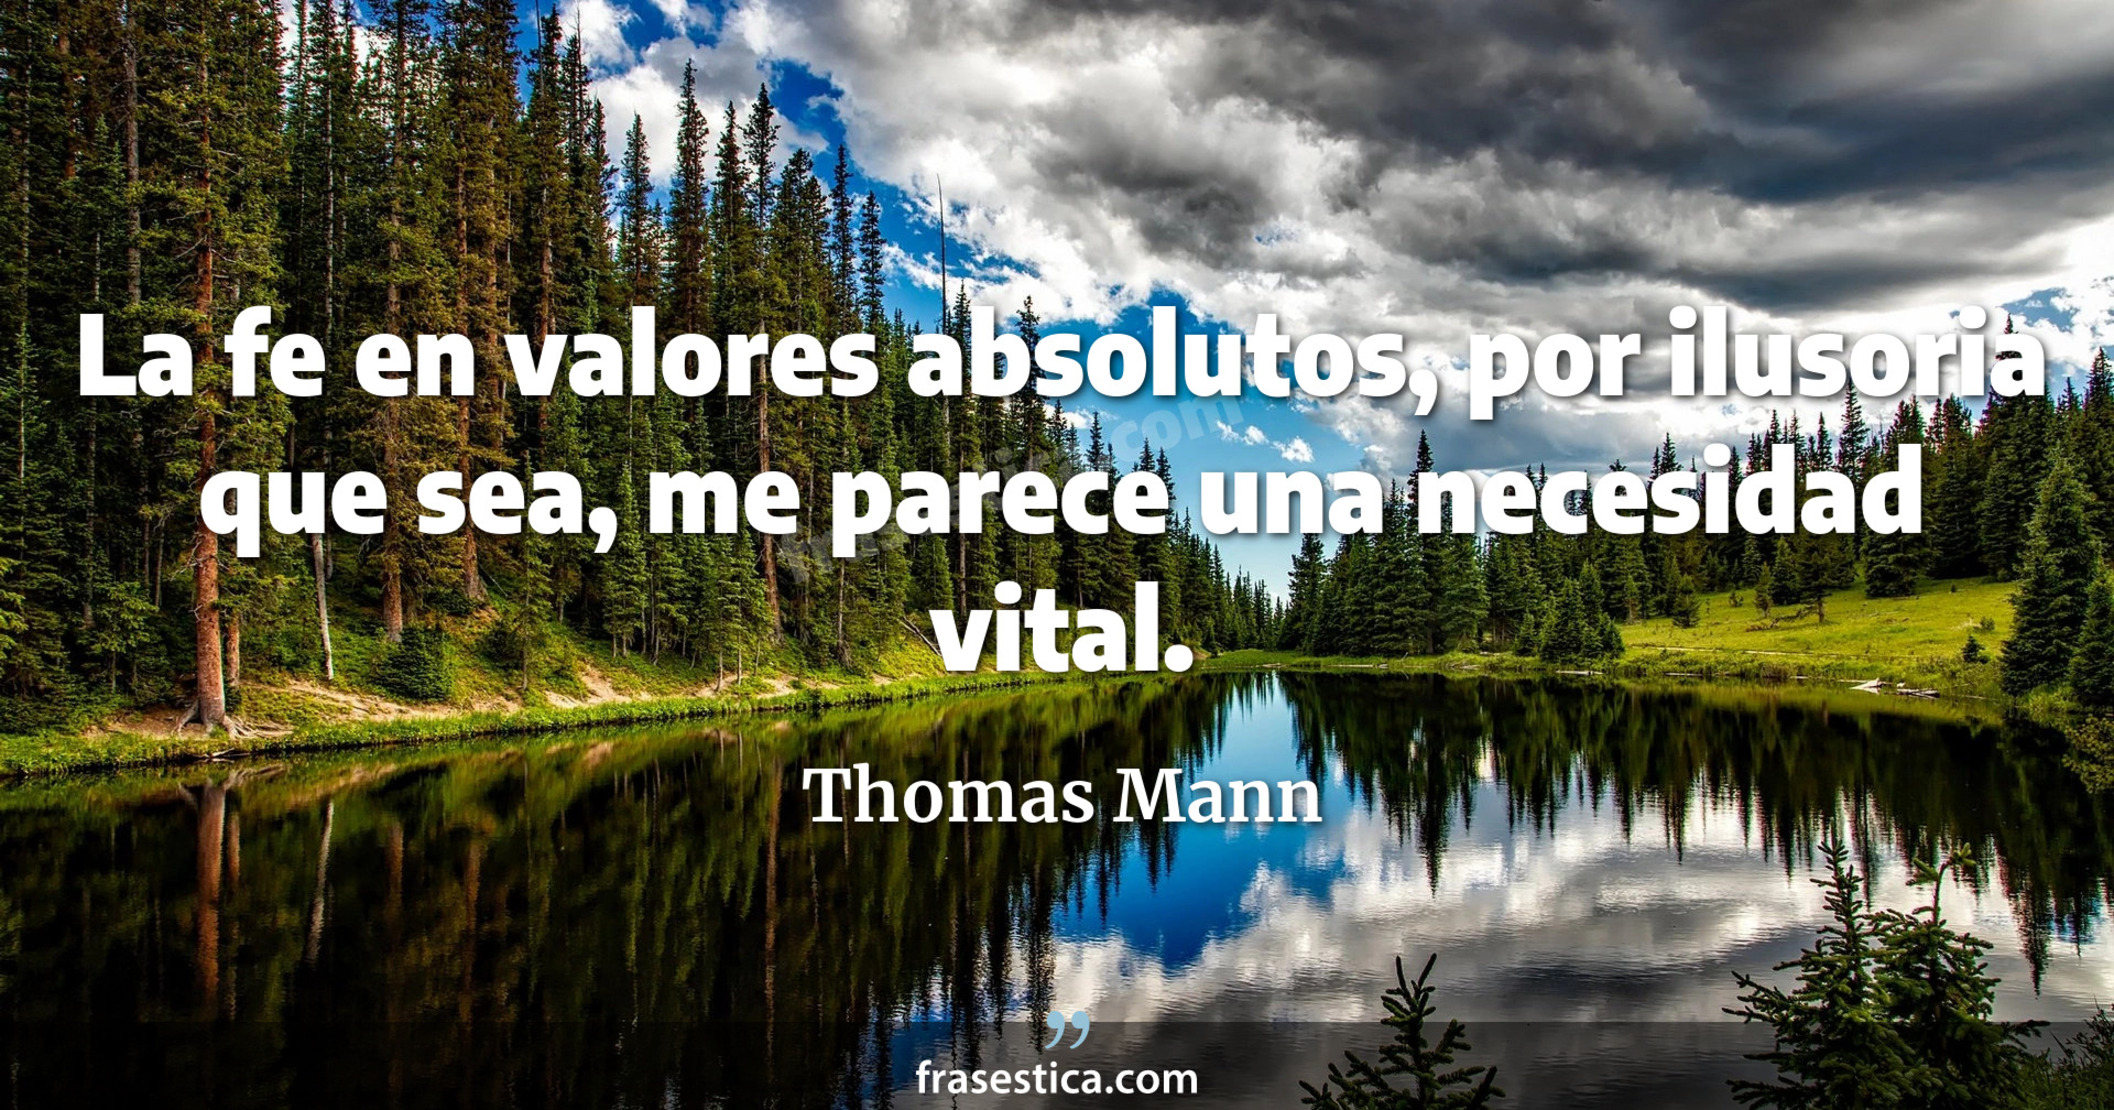 La fe en valores absolutos, por ilusoria que sea, me parece una necesidad vital. - Thomas Mann